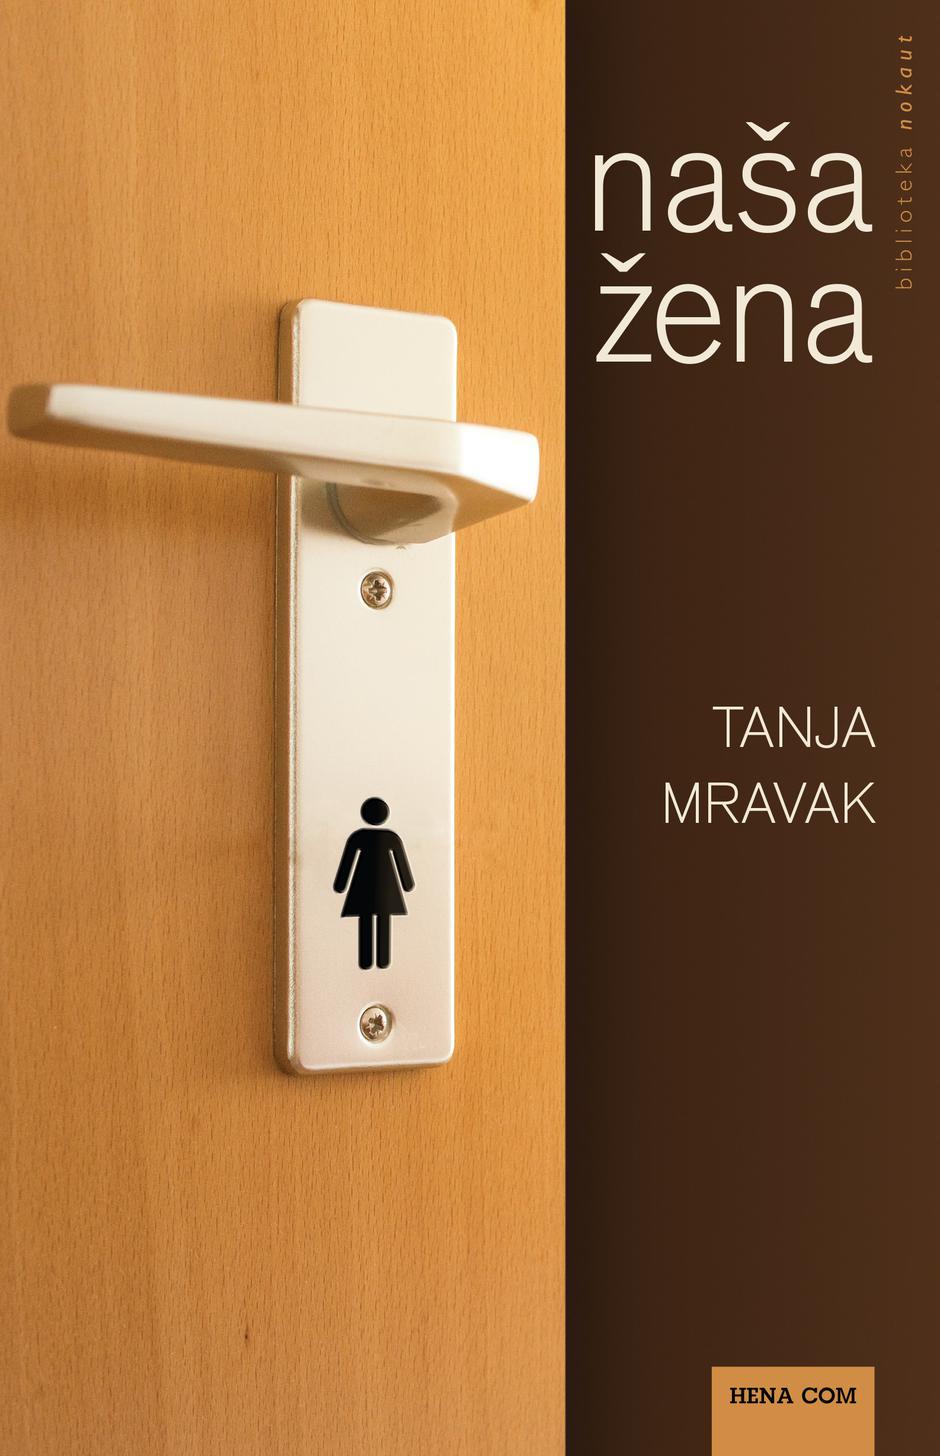 Tanja Mravak "Naša žena" | Author: Hena